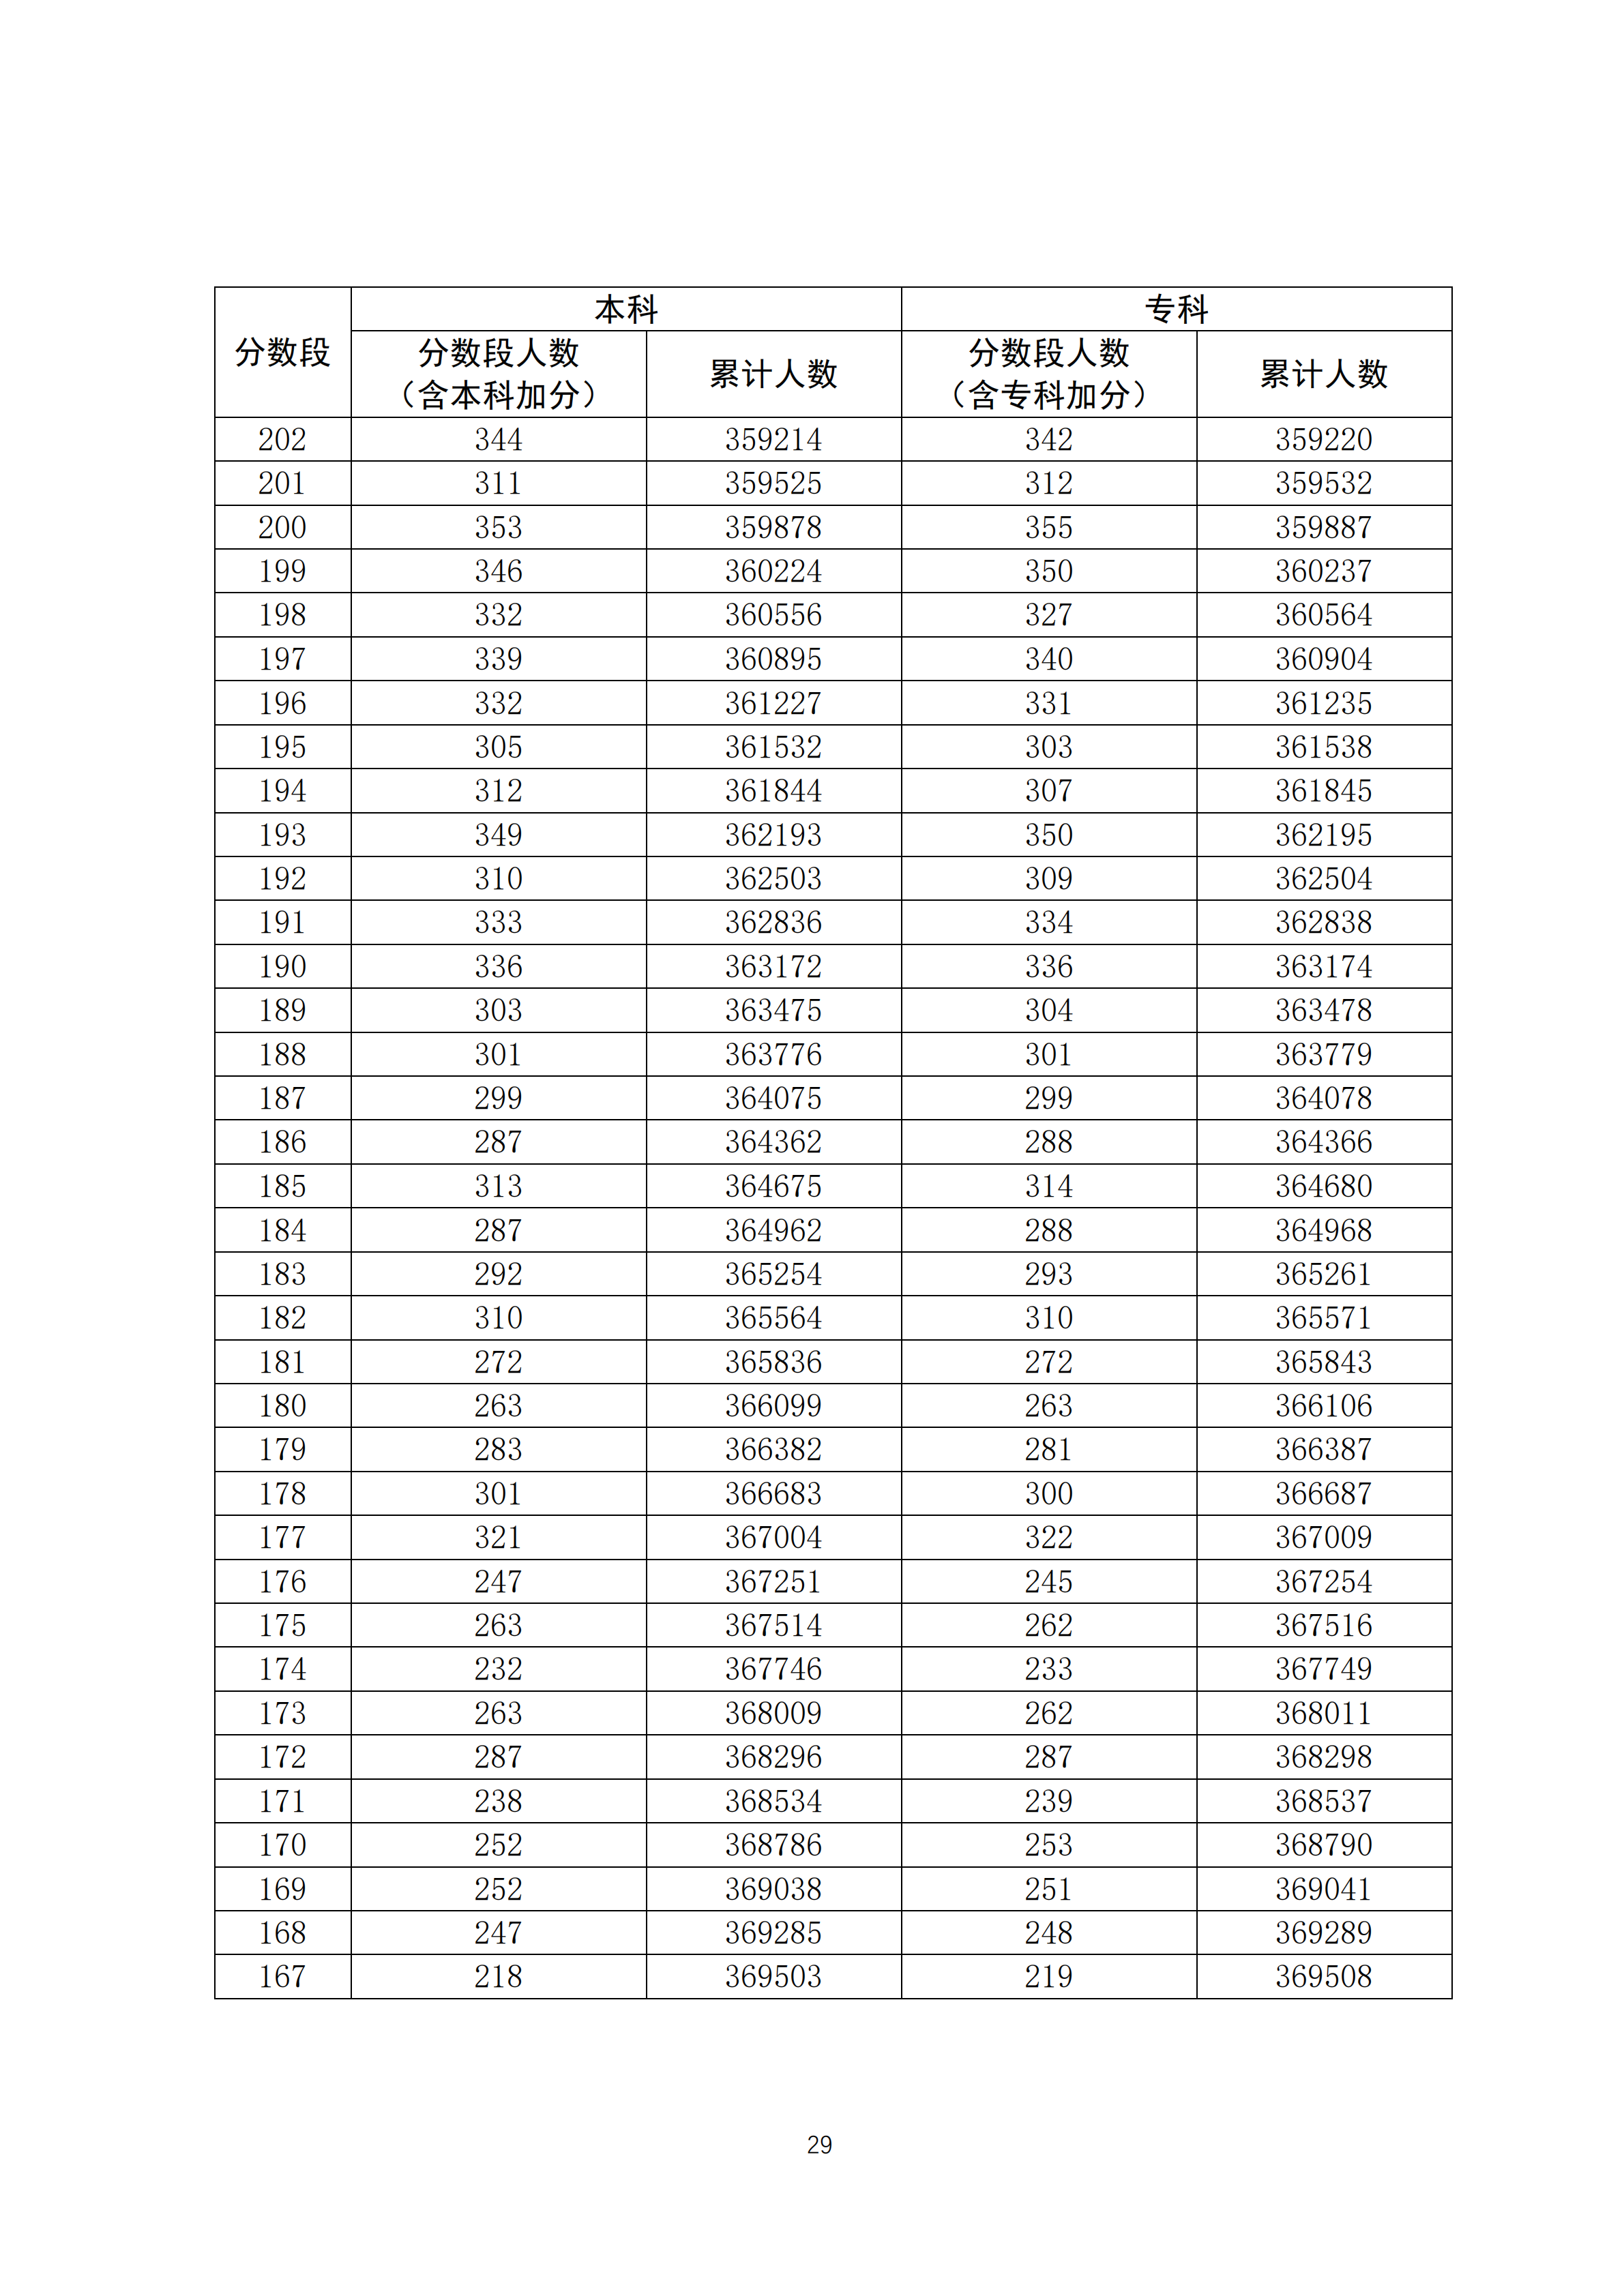 2020广东高考一分一段表 文科理科高考成绩排名